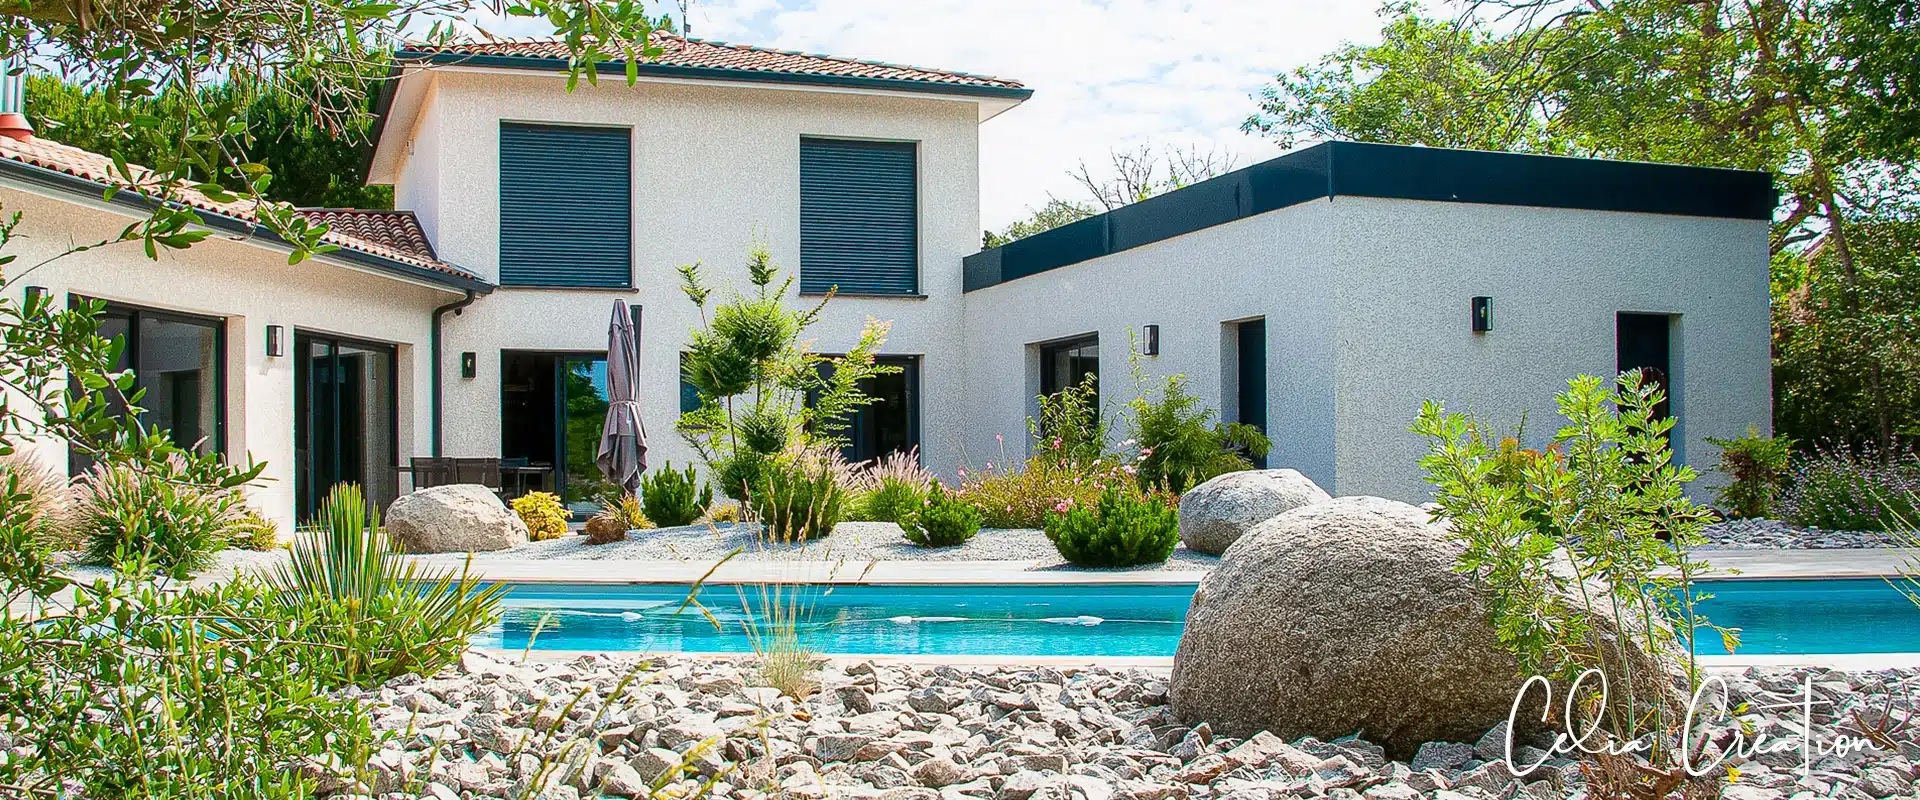 Luxueuse villa individuelle à Blagnac par CELIA Création, alliant design contemporain et éléments architecturaux haut de gamme